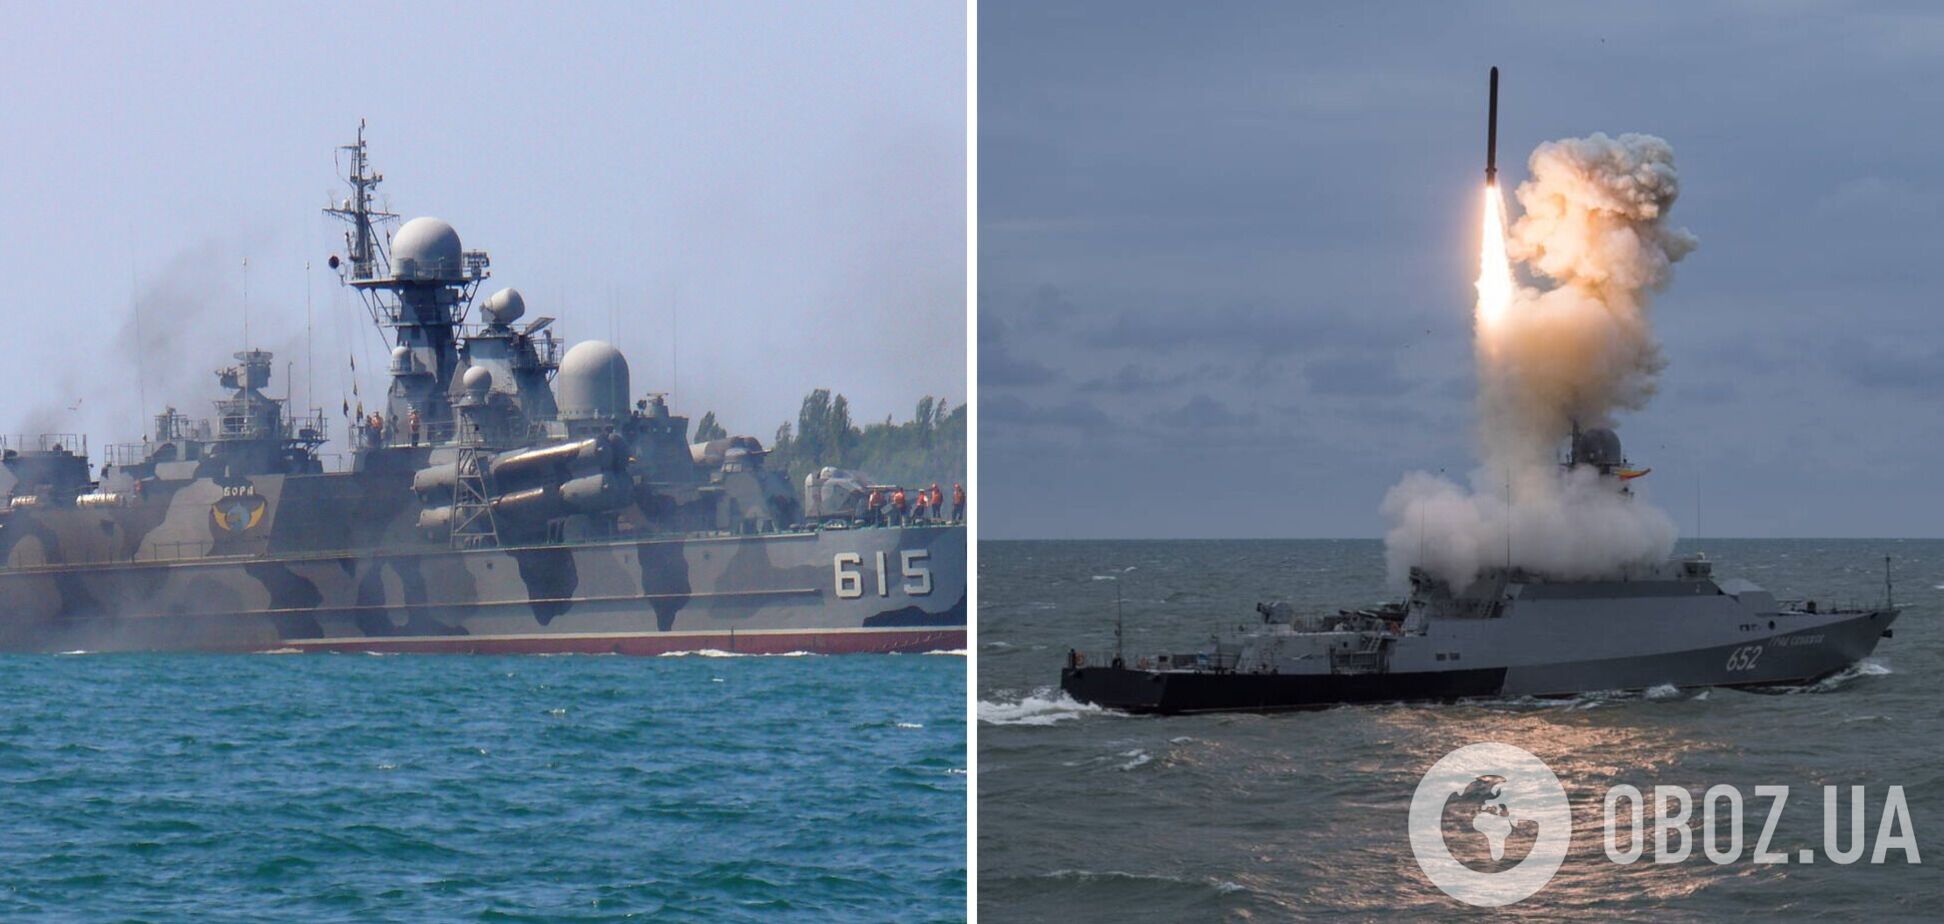 Морське угруповання окупантів у Чорному морі озброєне 30 крилатими ракетами, ймовірність висадки десанту залишається високою – ОК 'Південь'